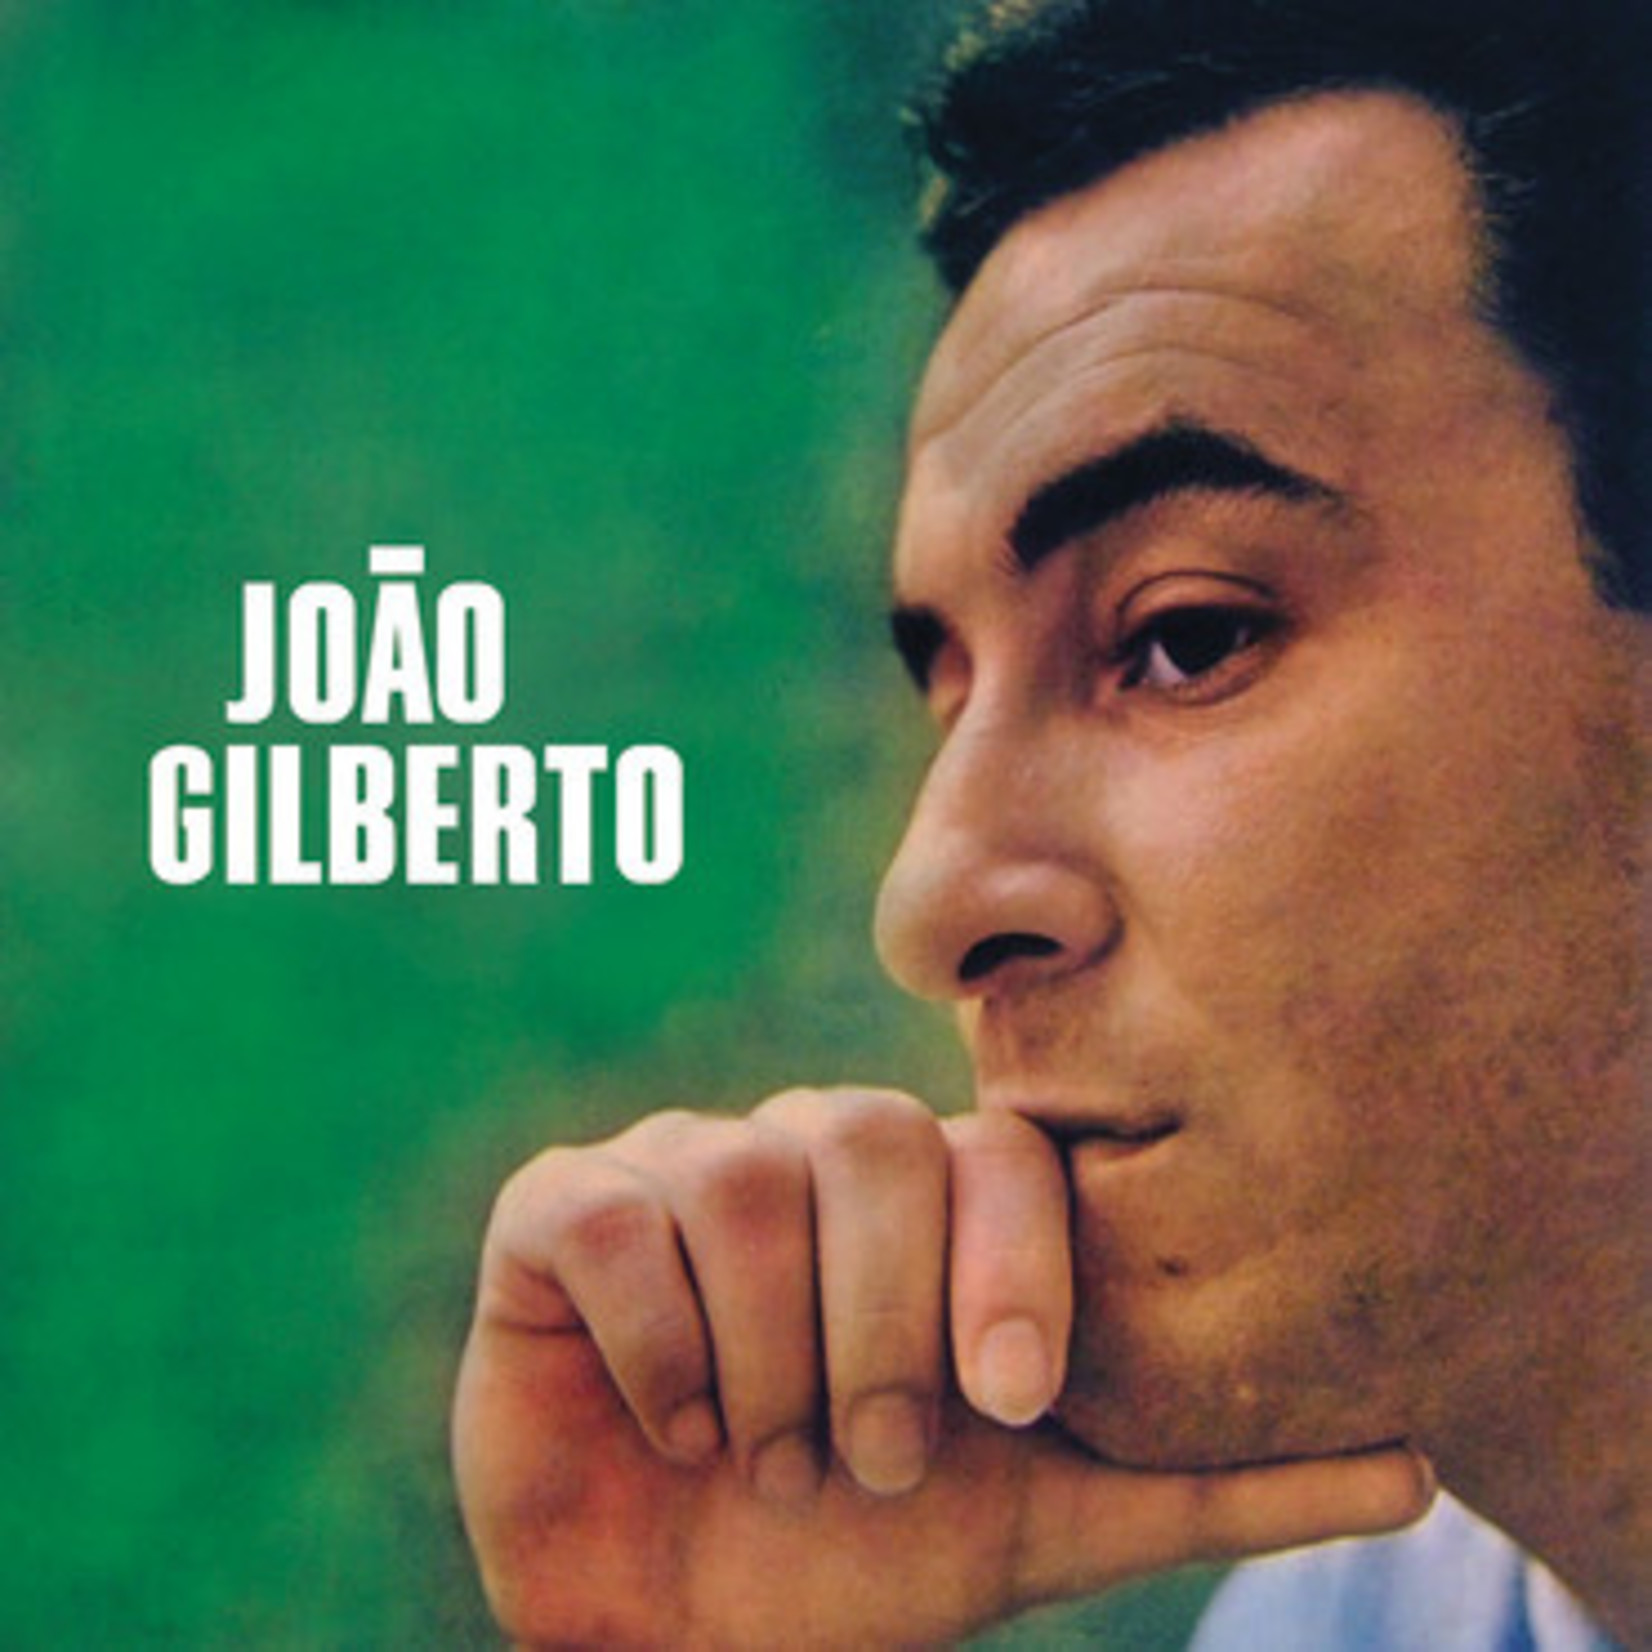 [New] Joao Gilberto - Joao Gilberto (clear vinyl)